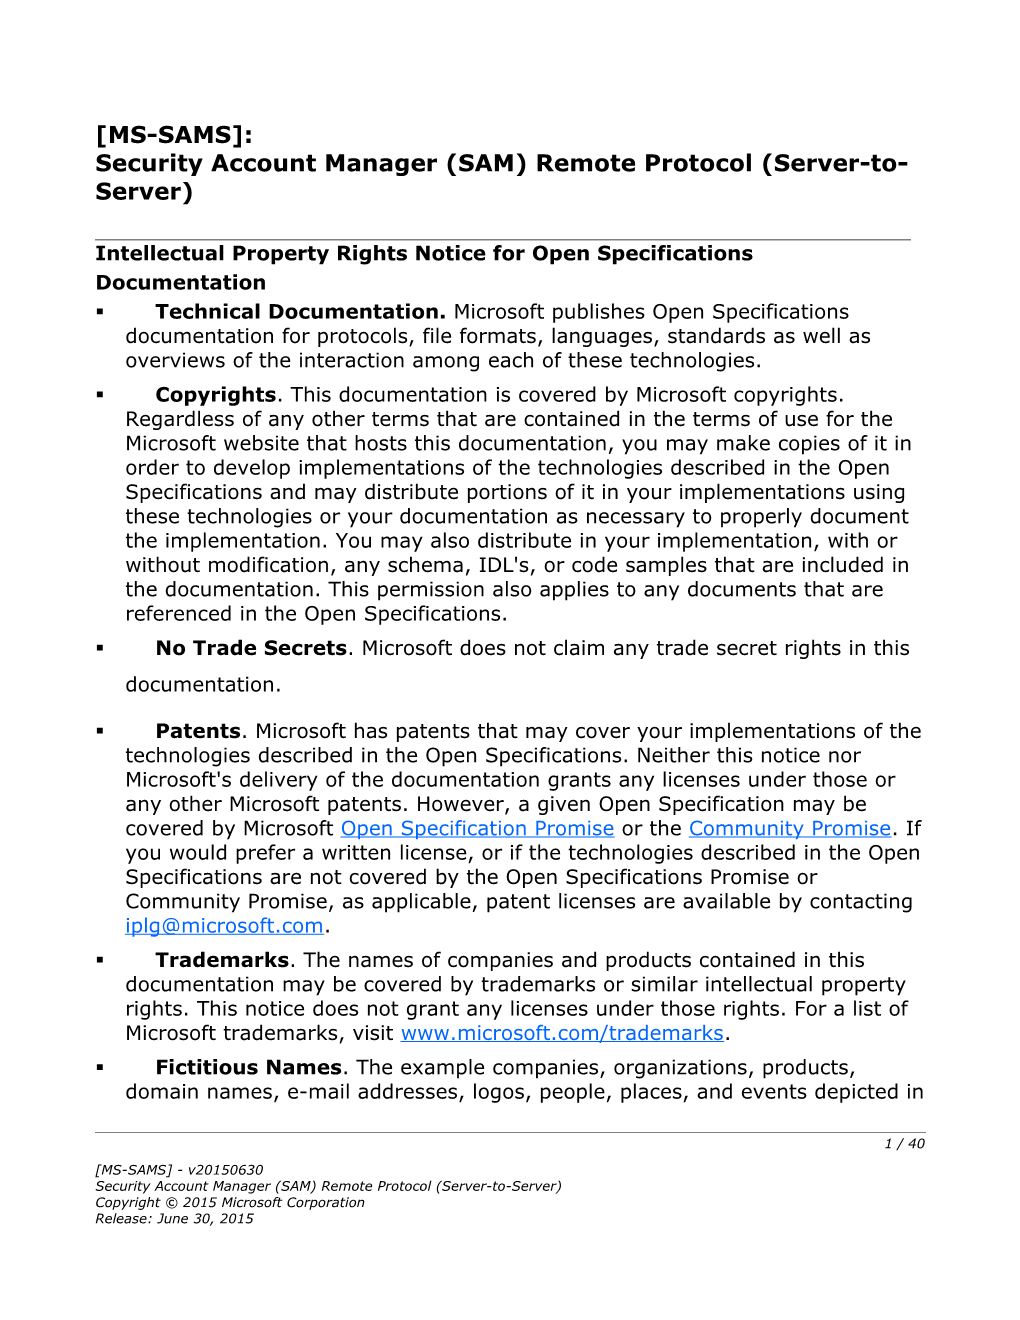 Security Account Manager (SAM) Remote Protocol (Server-To-Server)